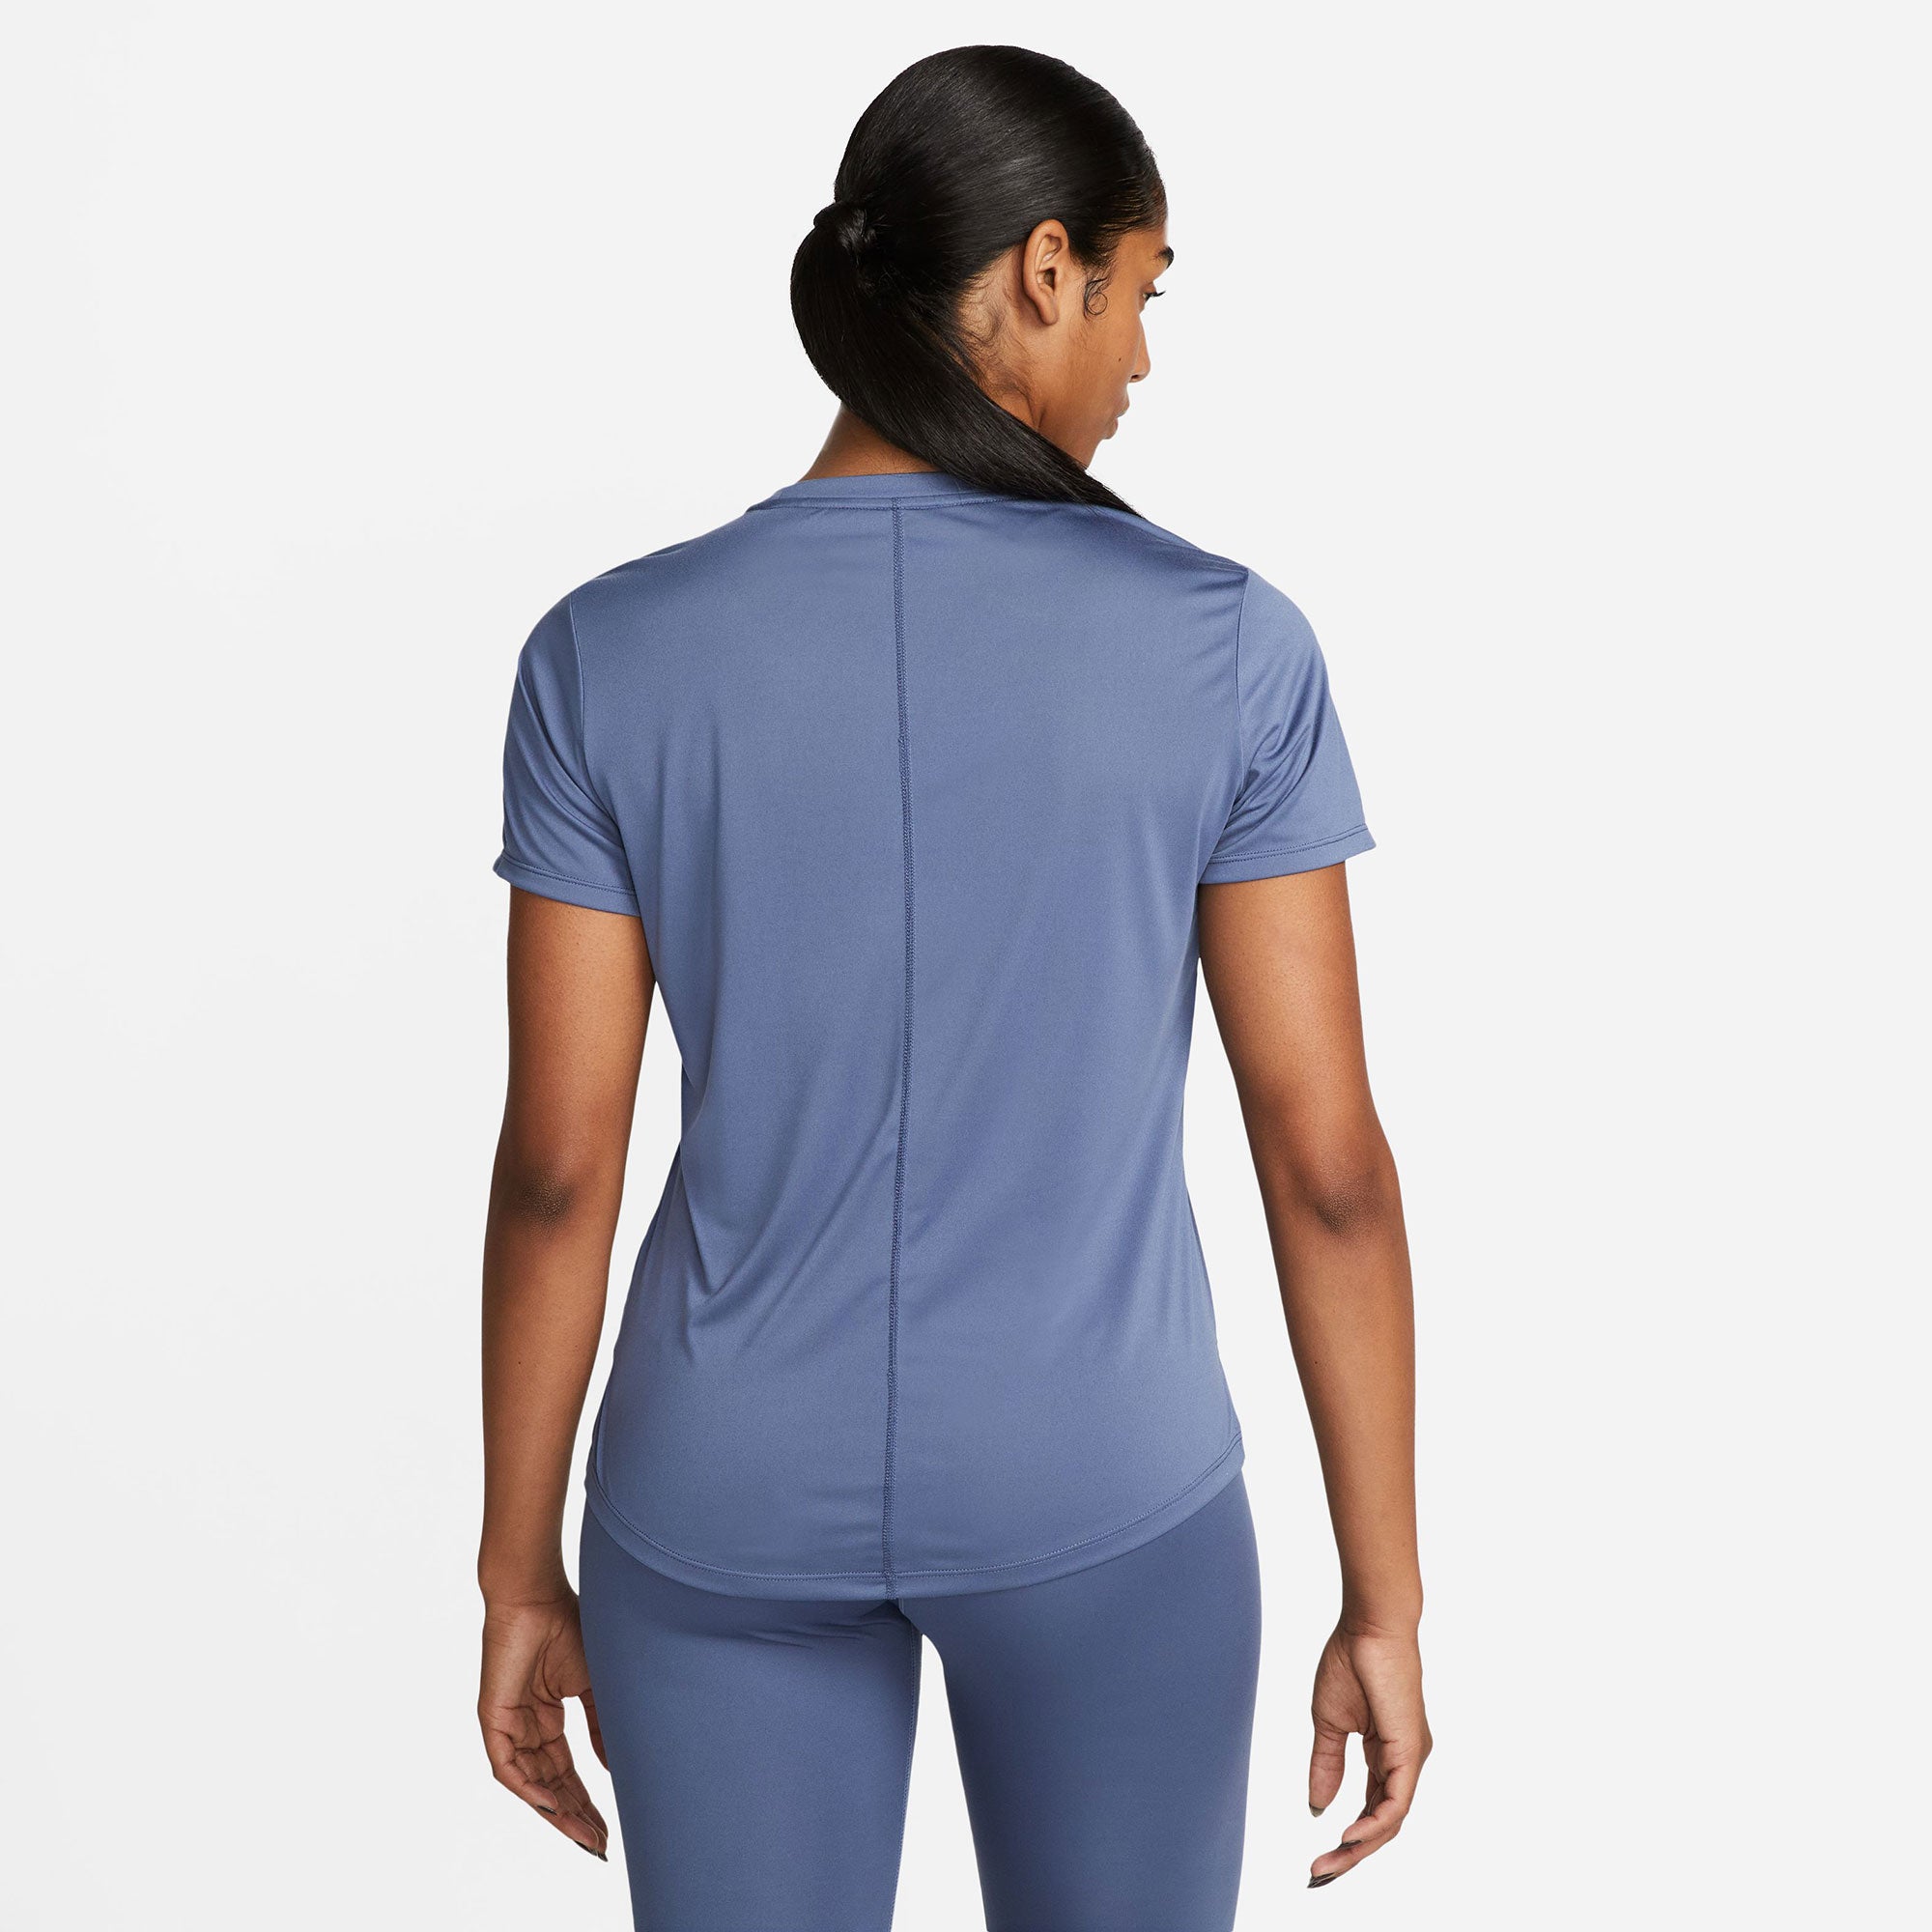 Nike One Dri-FIT Women's Standard Fit Shirt Blue (2)